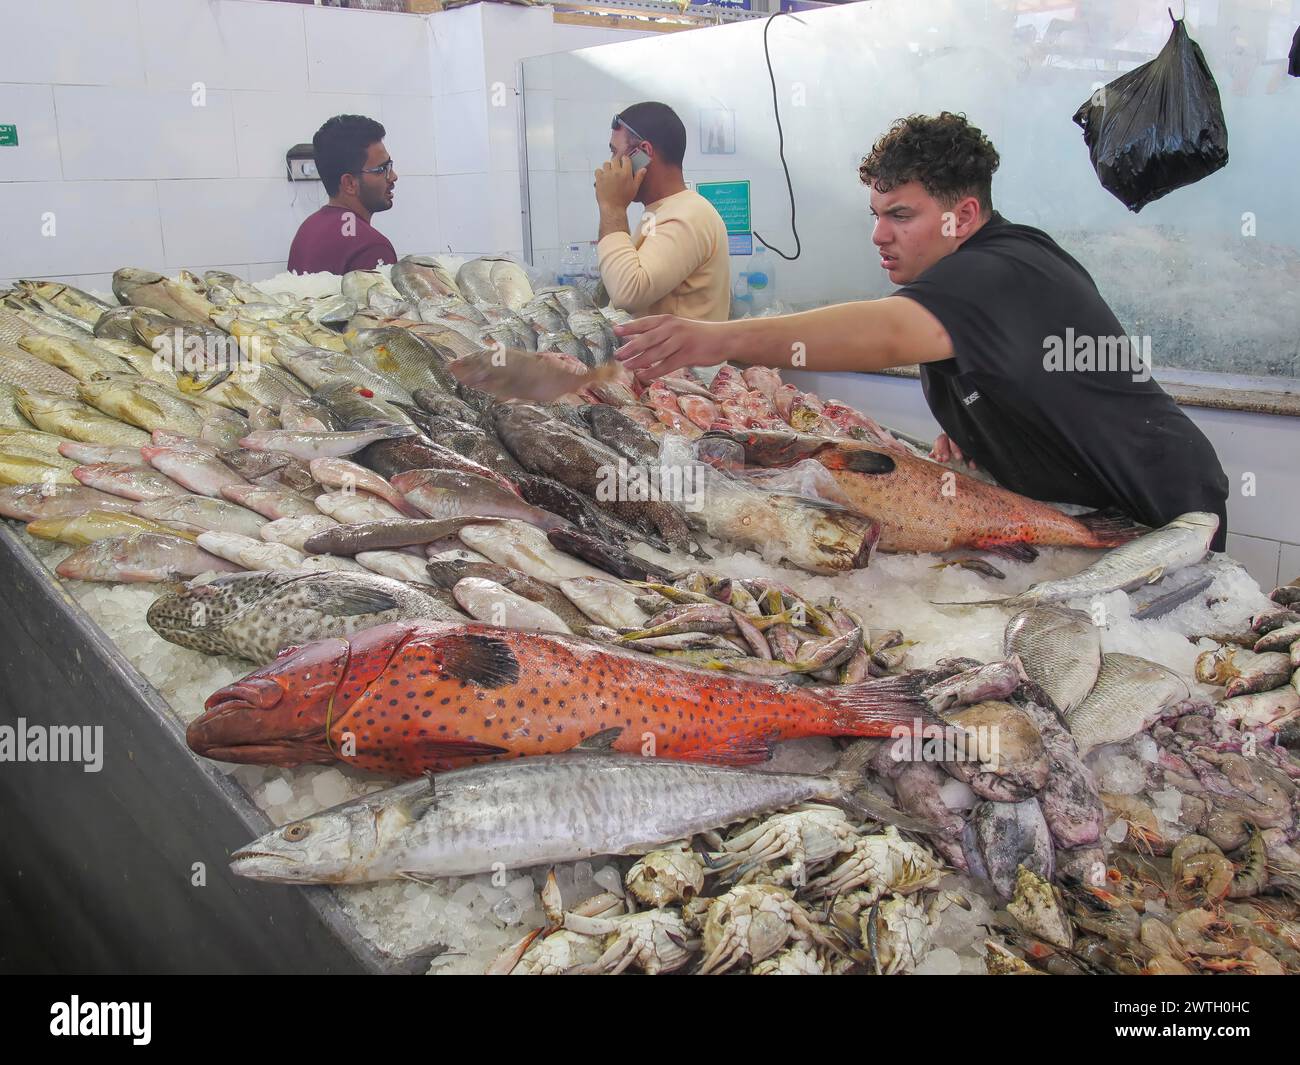 Juwelenbarsch und andere Fische im Fischmarkt von Hurghada, Ägypten Foto Stock